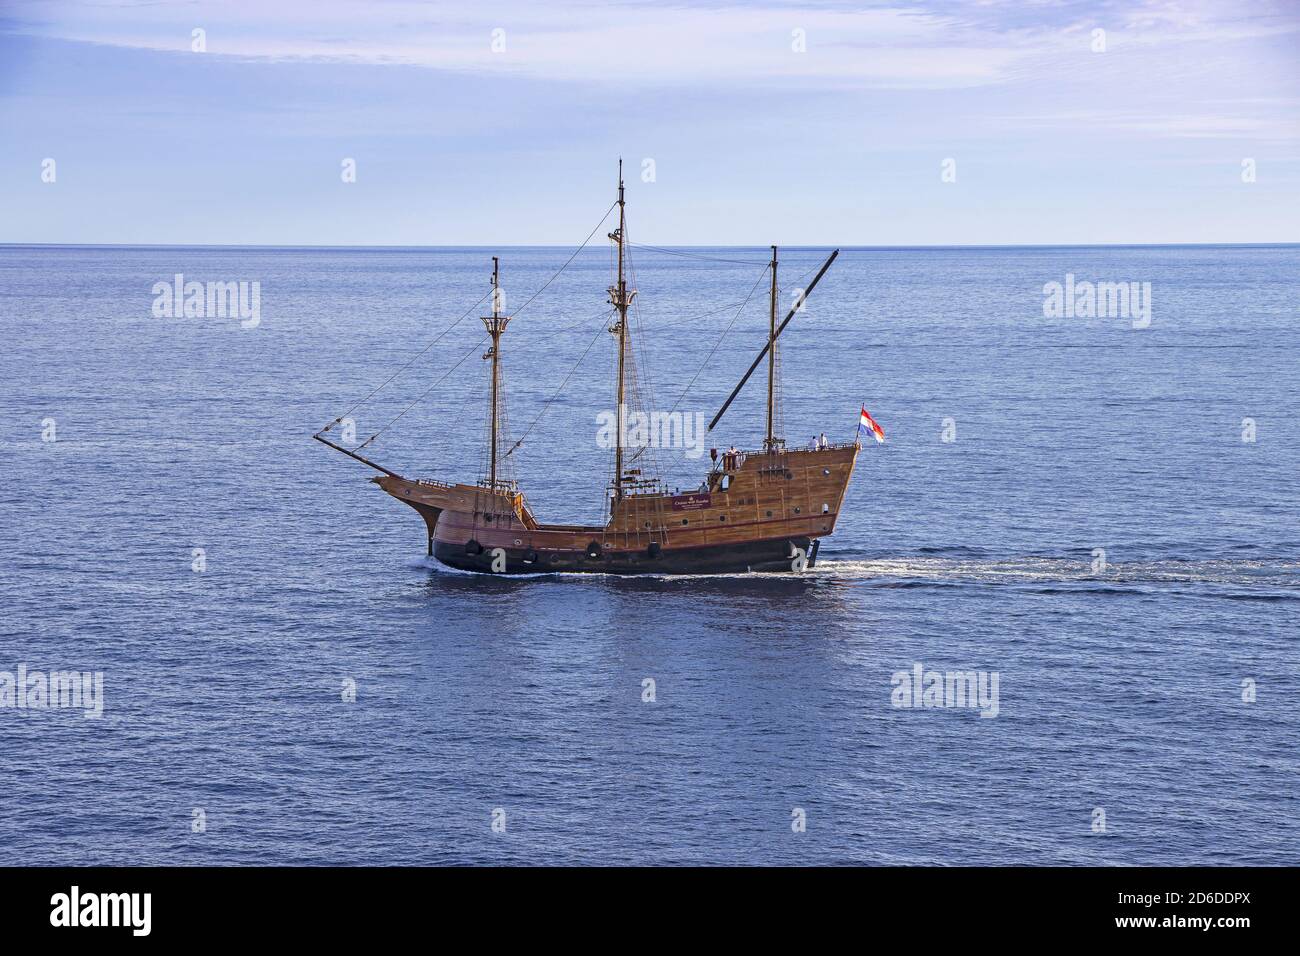 Dubrovnik, Croatie - 02. Septembre 2020: Karaka, réplique touristique du bateau médiéval en bois, naviguant jusqu'au vieux port de Dubrovnik, Croatie, Europe. Banque D'Images